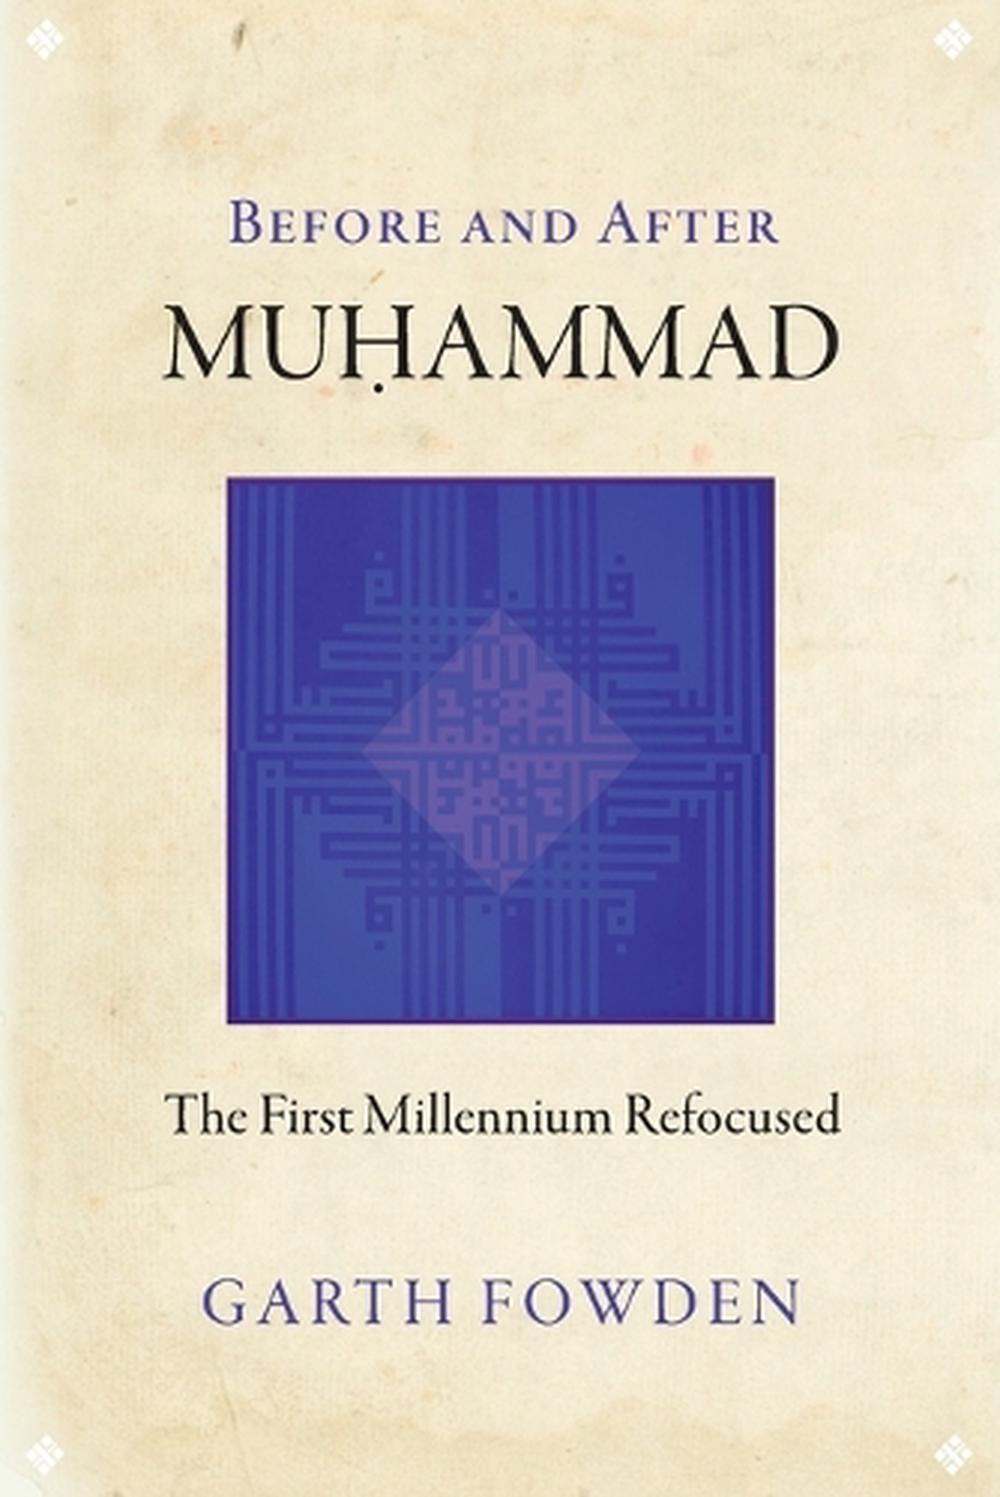 Anthony muhammad dissertation